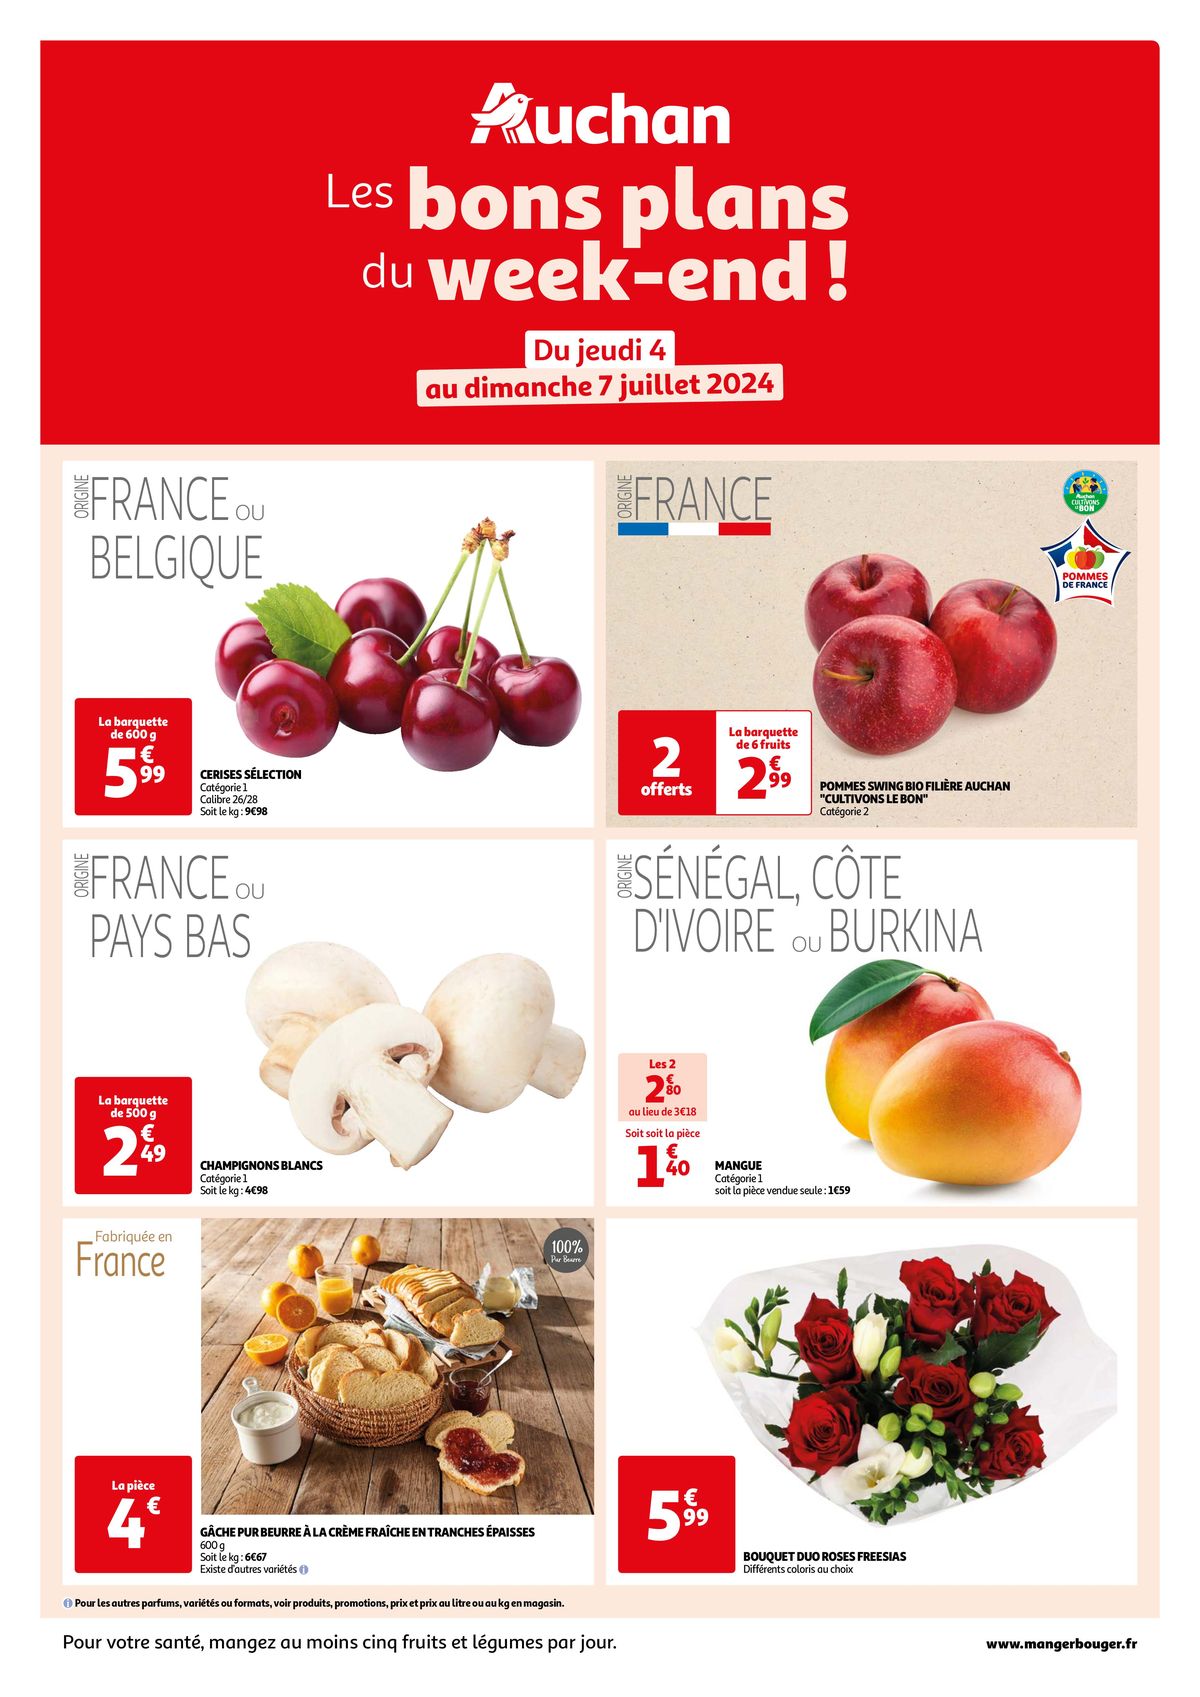 Catalogue Les bons plans du week-end dans votre hyper !, page 00001